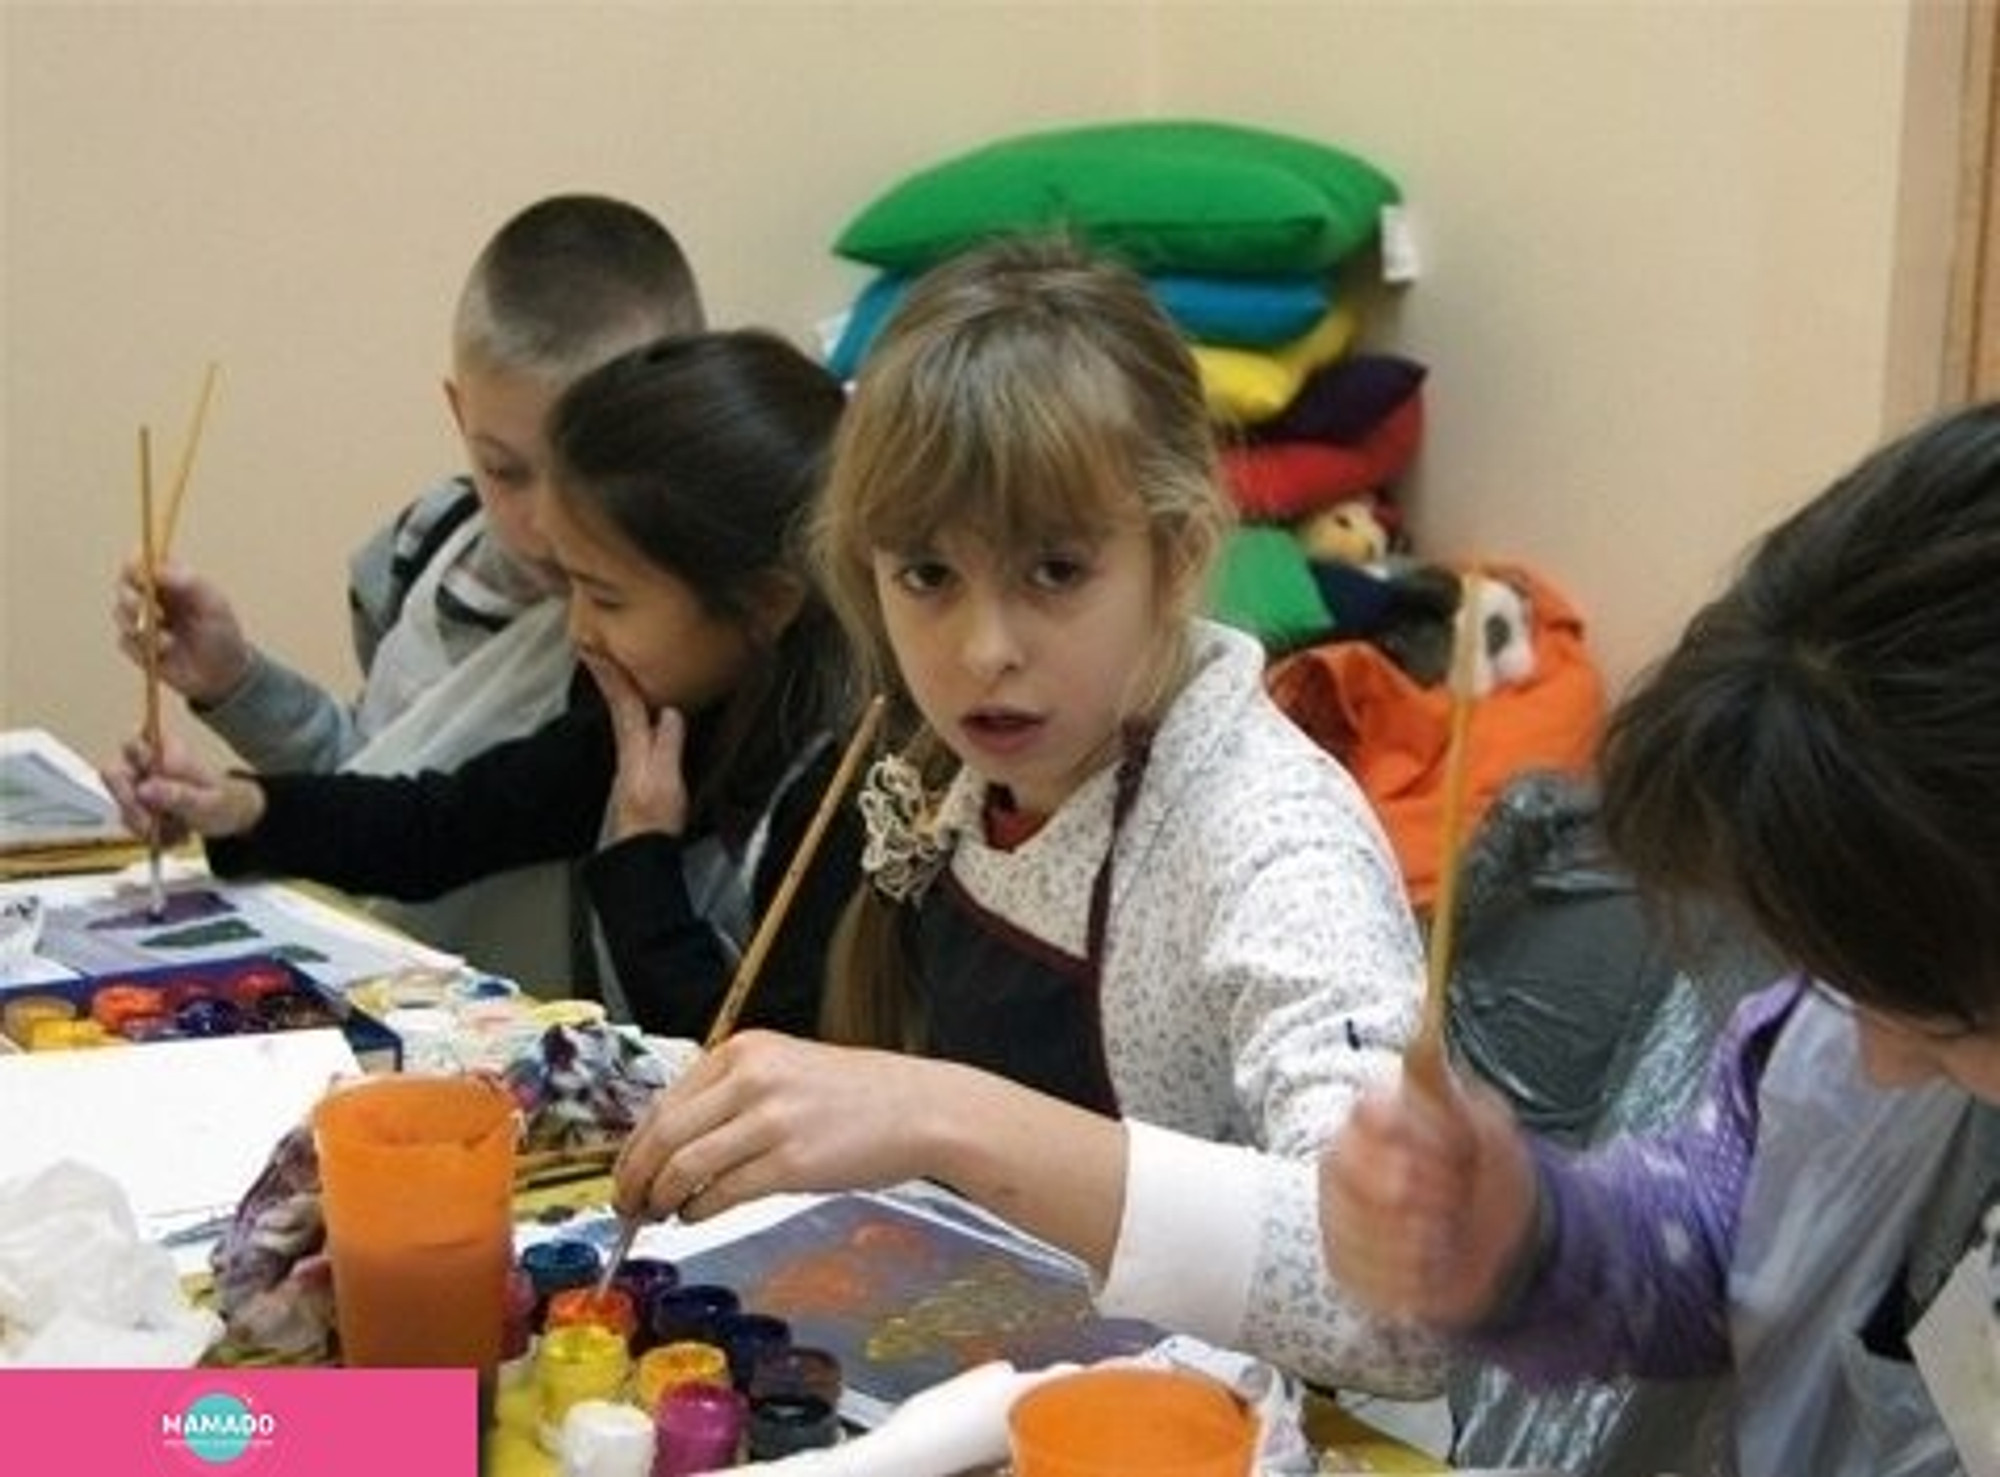 "Студия интуитивного рисования", правополушарное рисование и рисование песком для детей от 6 лет, песочное шоу на детский праздник, Сокольники, Москва 